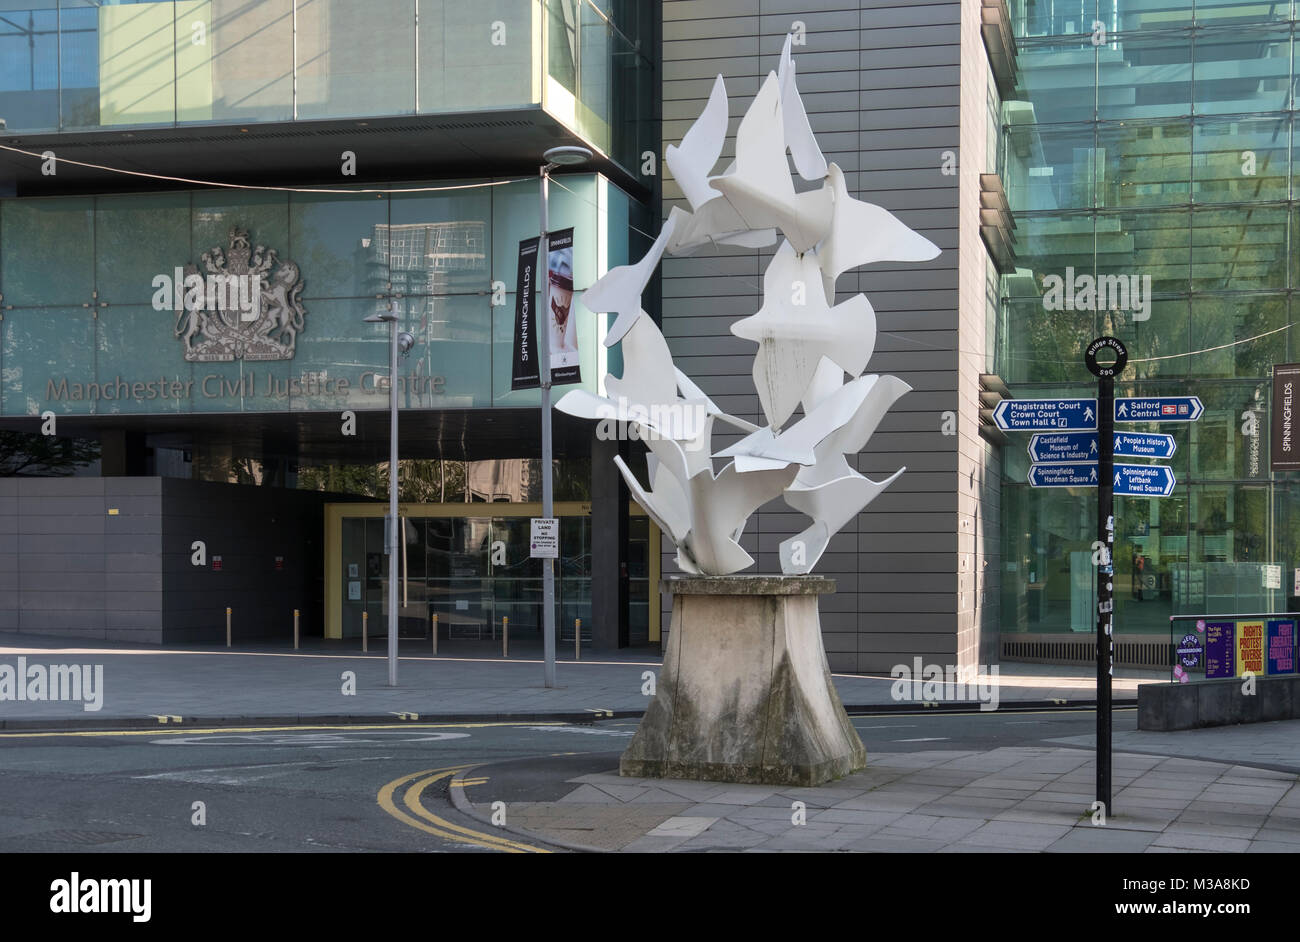 Colombes de paix sculpture par Michael Lyons Manchester extérieur de la Justice Civile Centre Building, Manchester, Angleterre, RU Banque D'Images